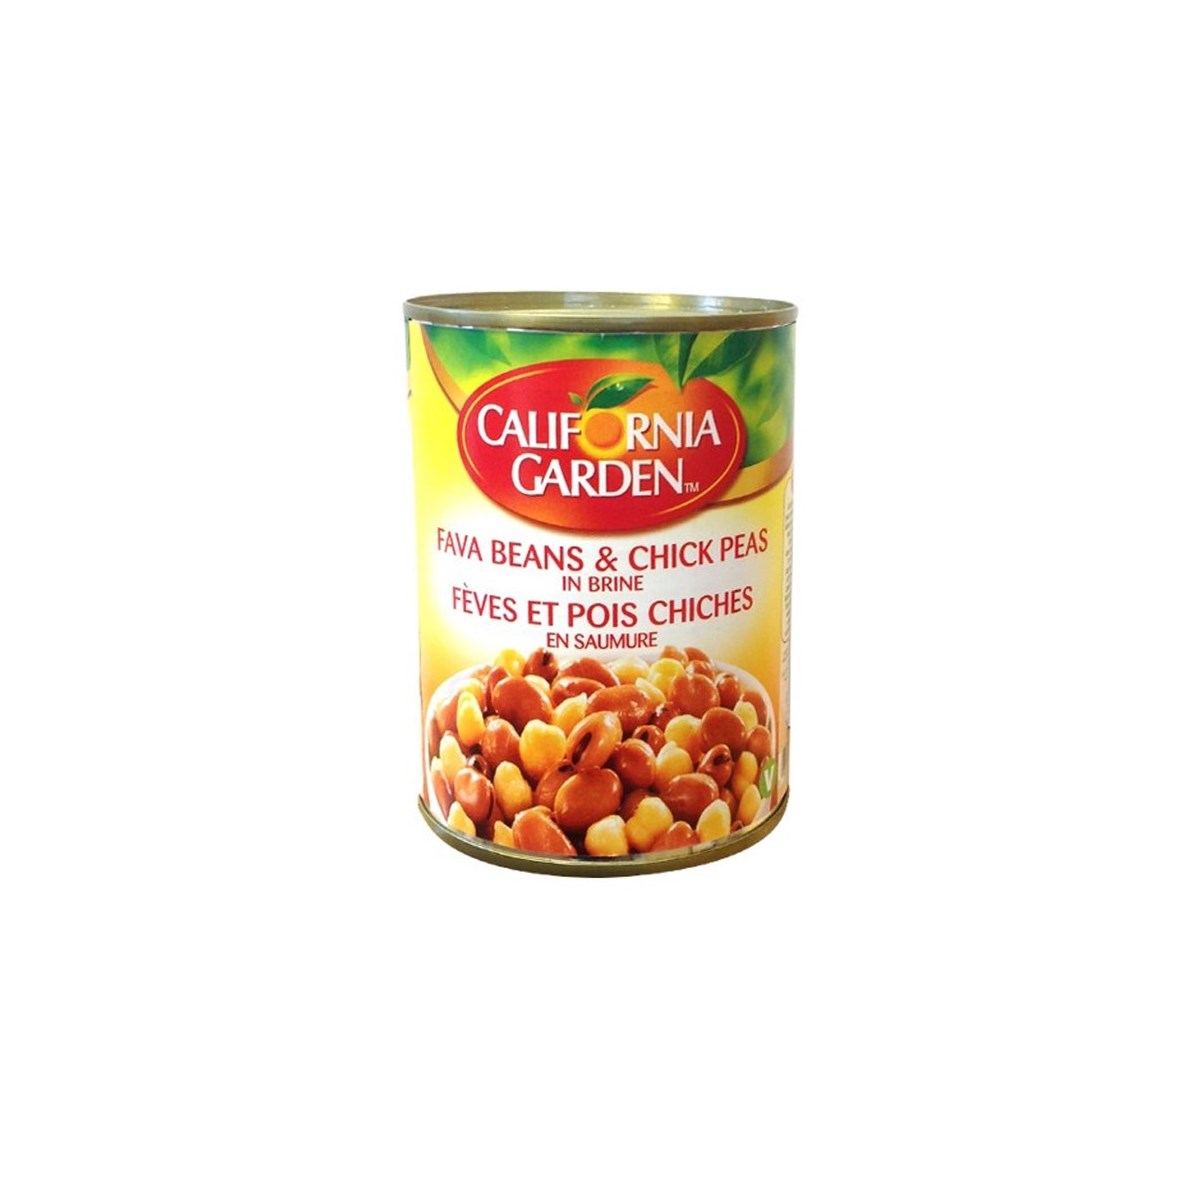 Fava Beans- Chickpeas Recipe "CALIFORNIA GARDEN" 1